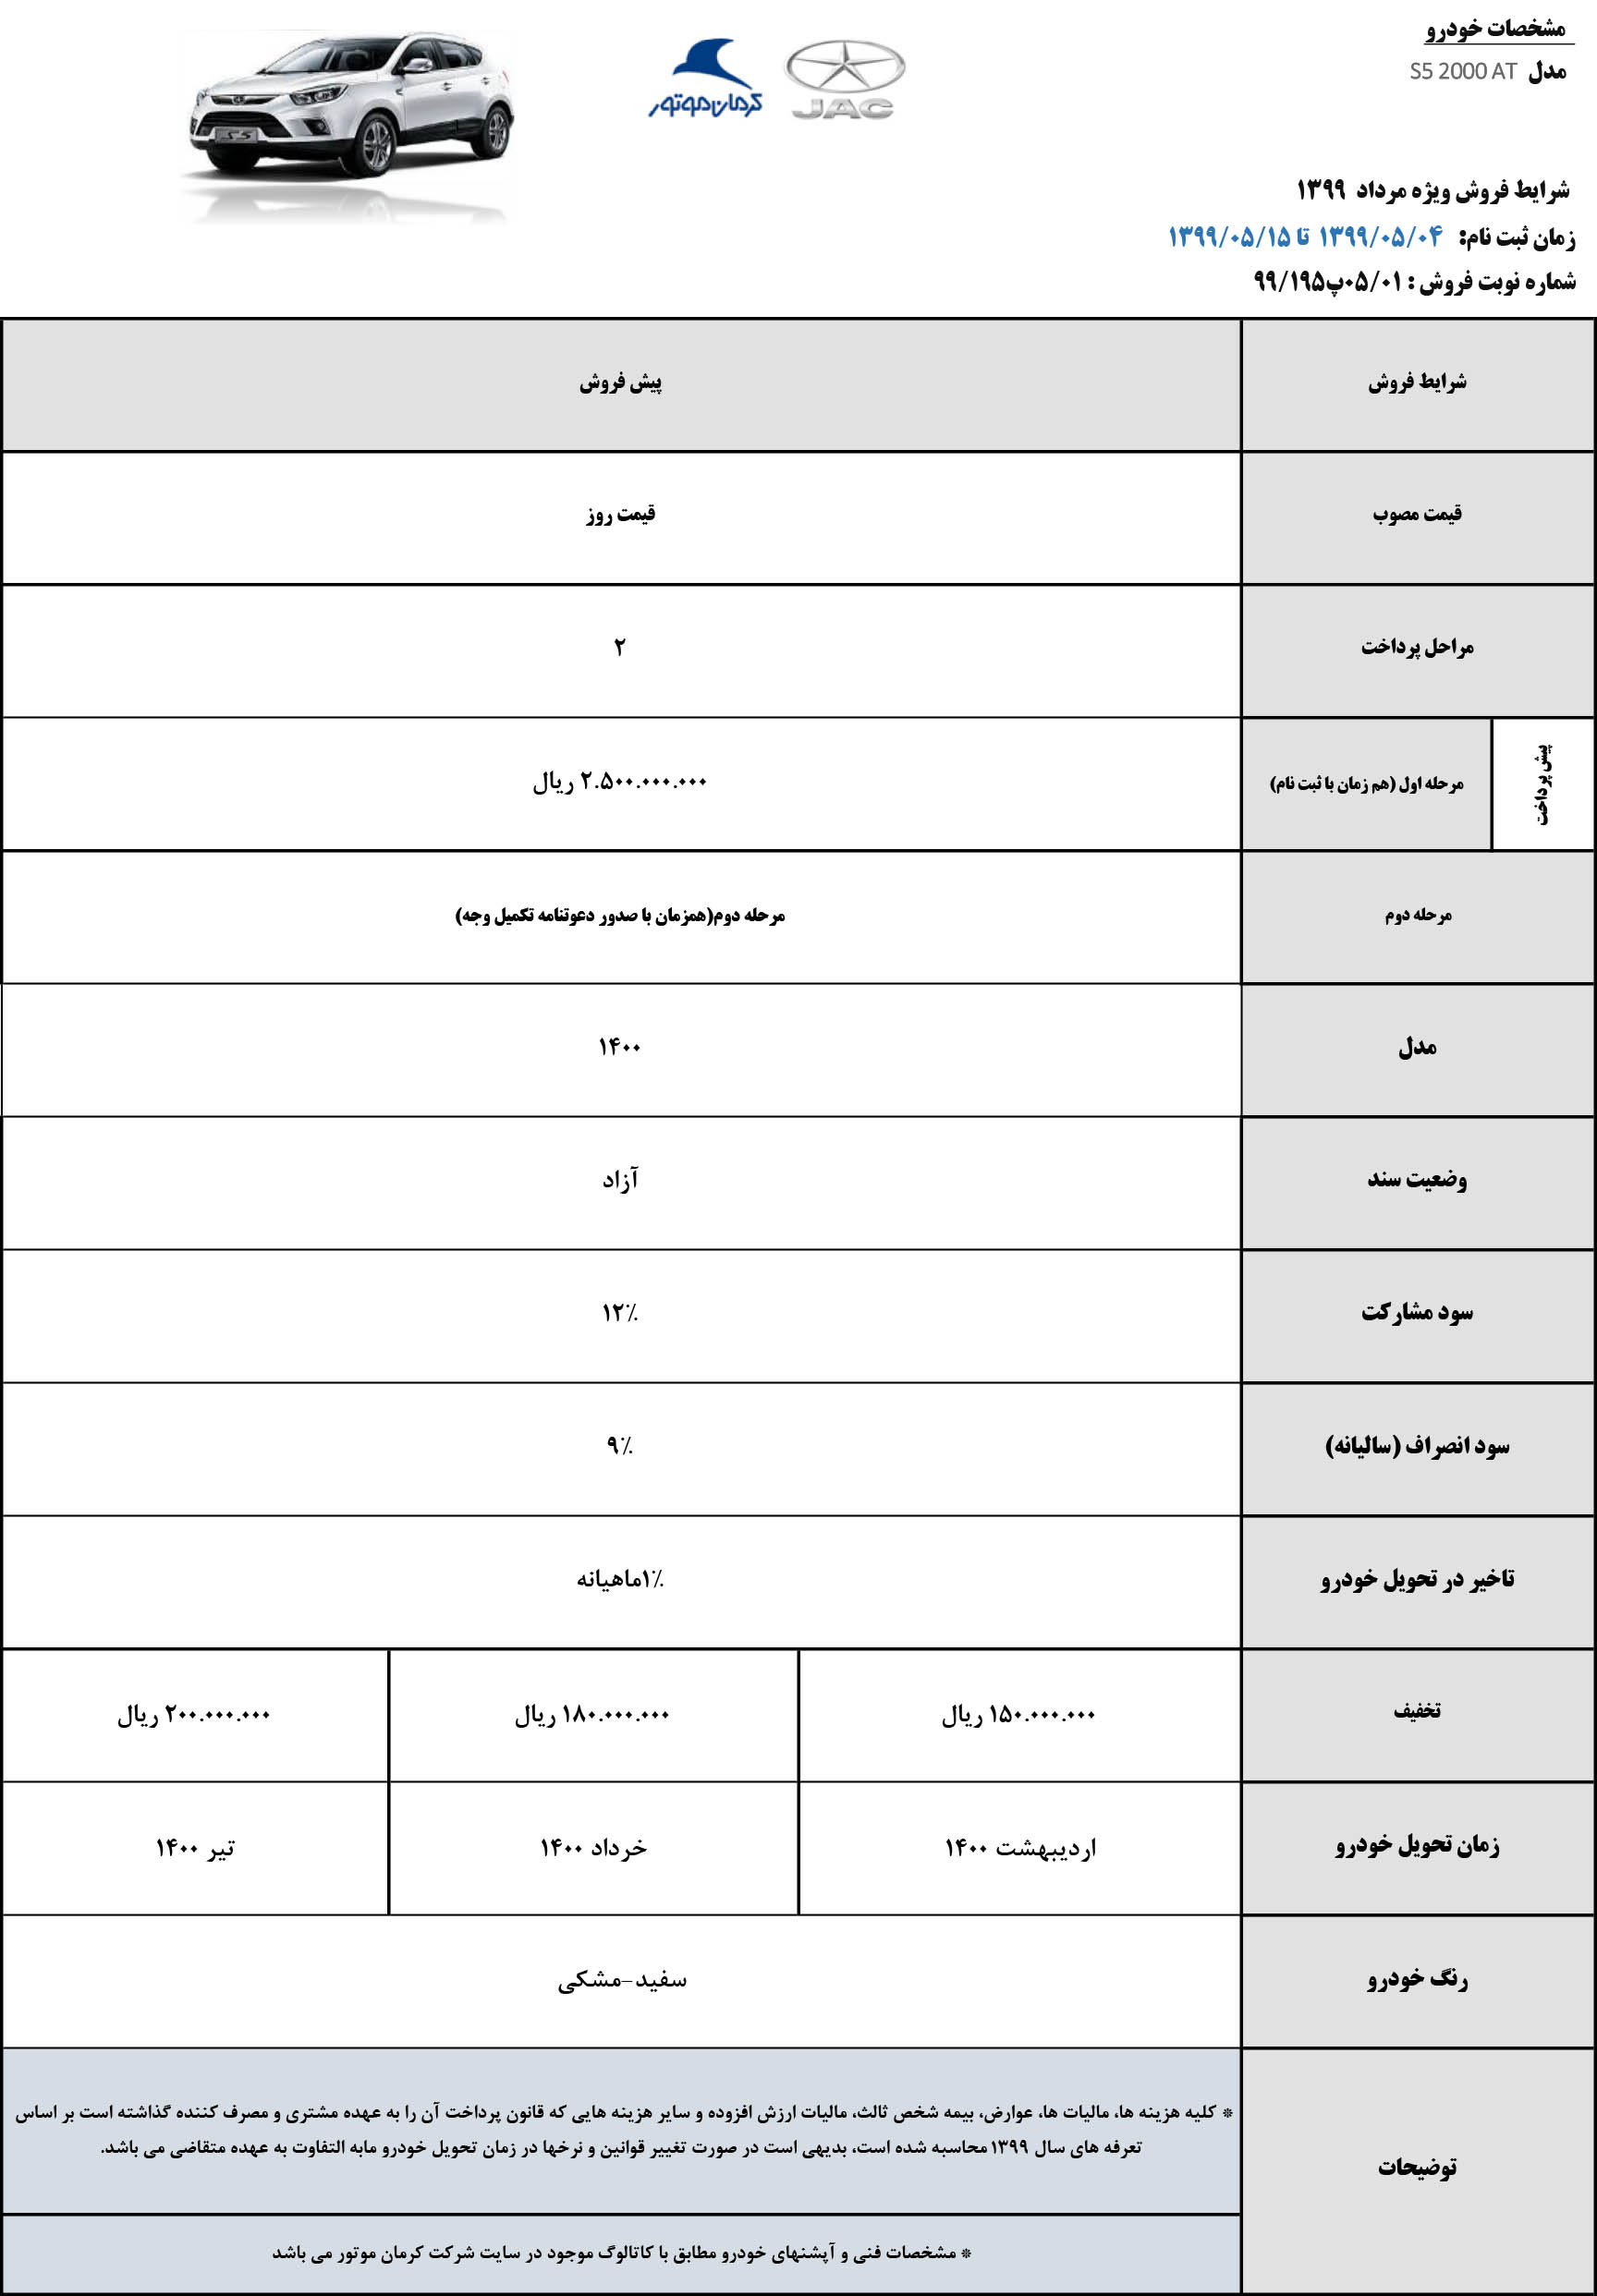 پیش فروش جک S5 اتوماتیک توسط کرمان موتور ویژه نیمه اول مرداد ماه با قیمت غیرقطعی + جدول